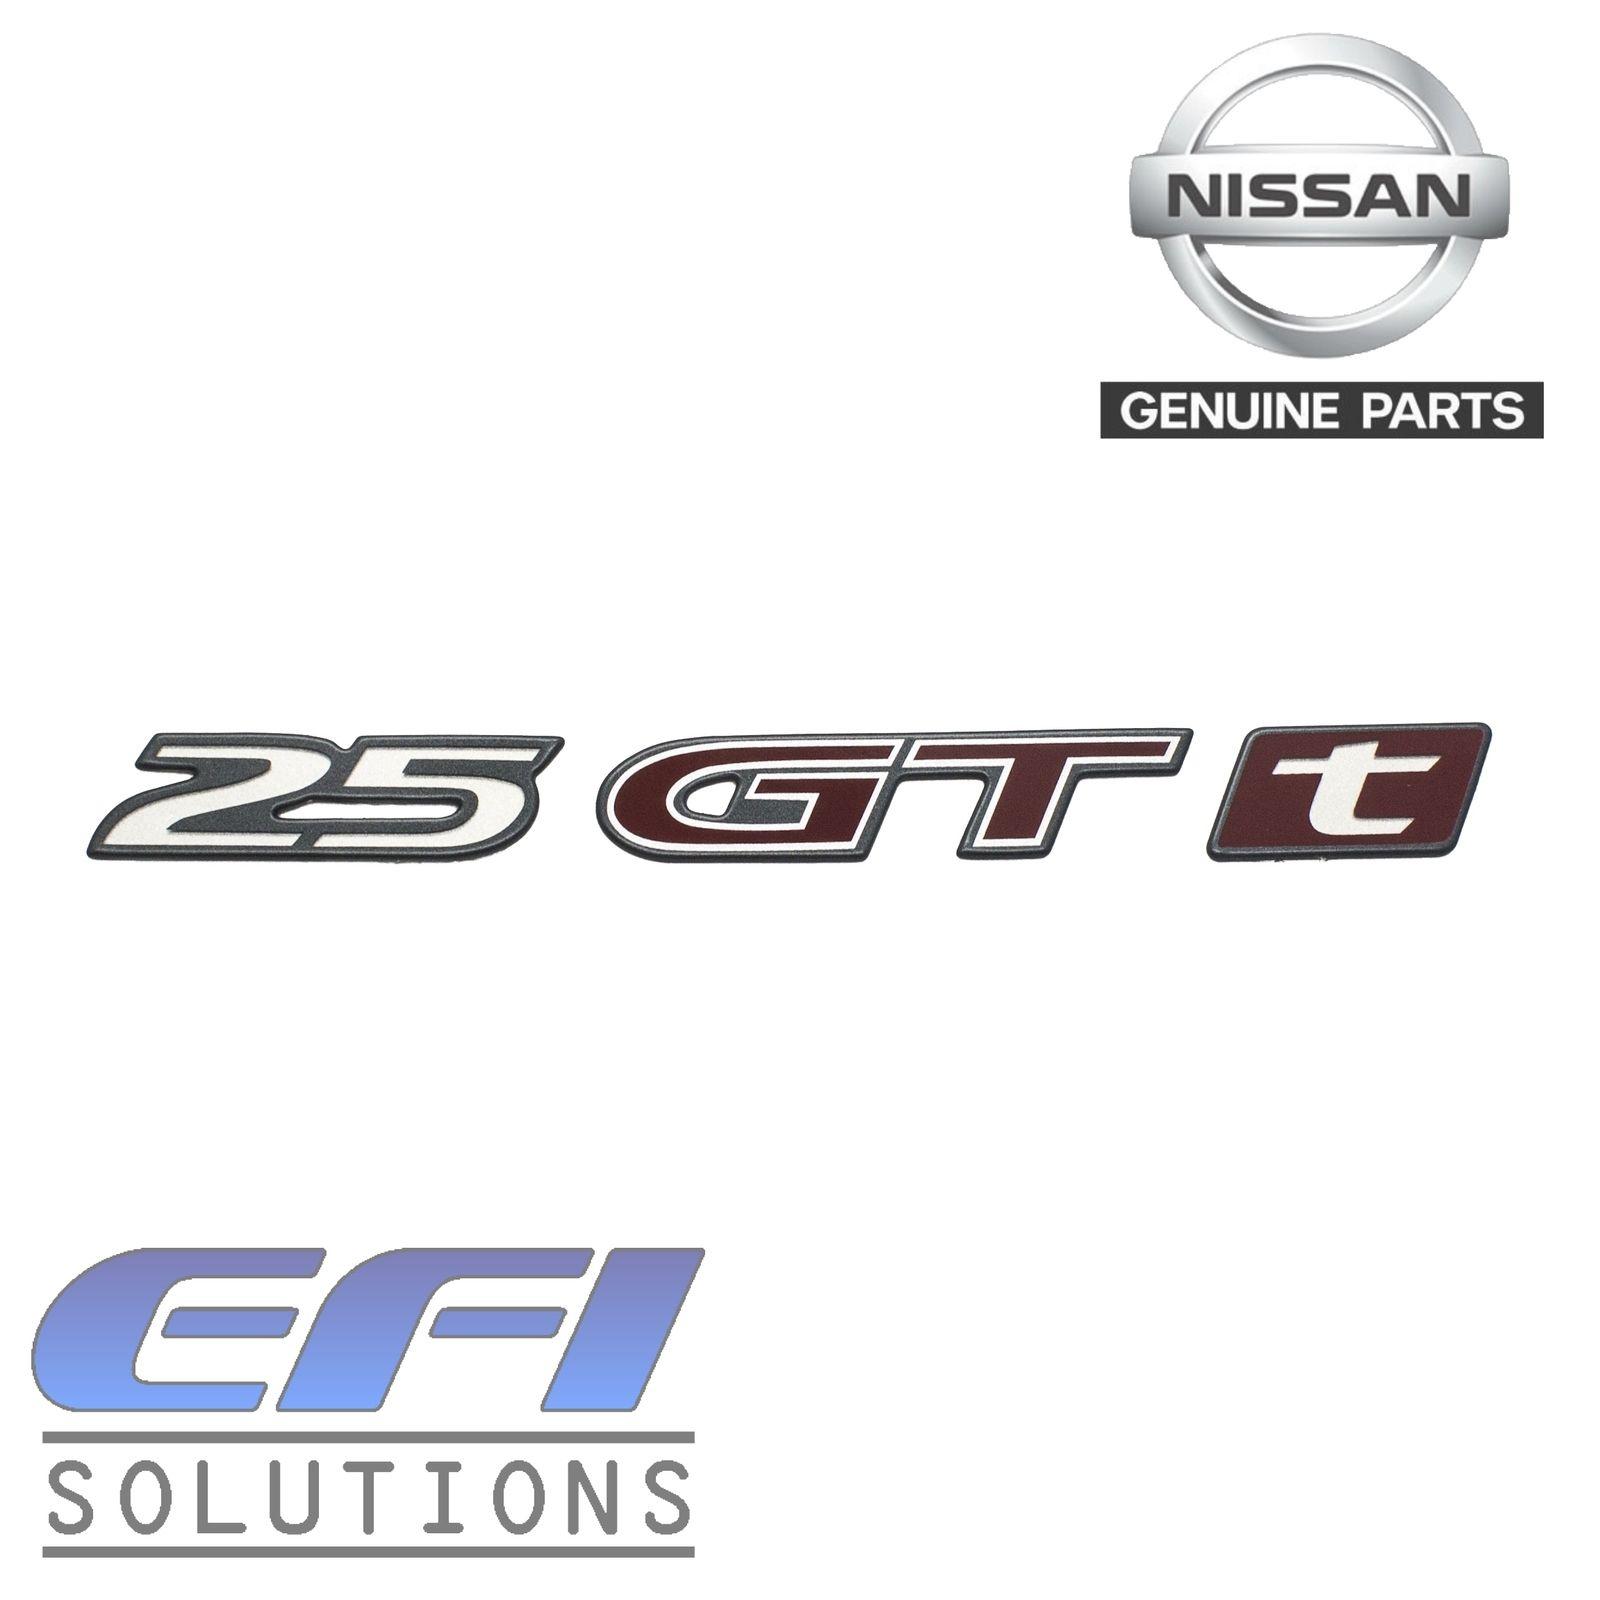 Gtt Logo - Genuine Nissan 25GTT Badge / Emblem 